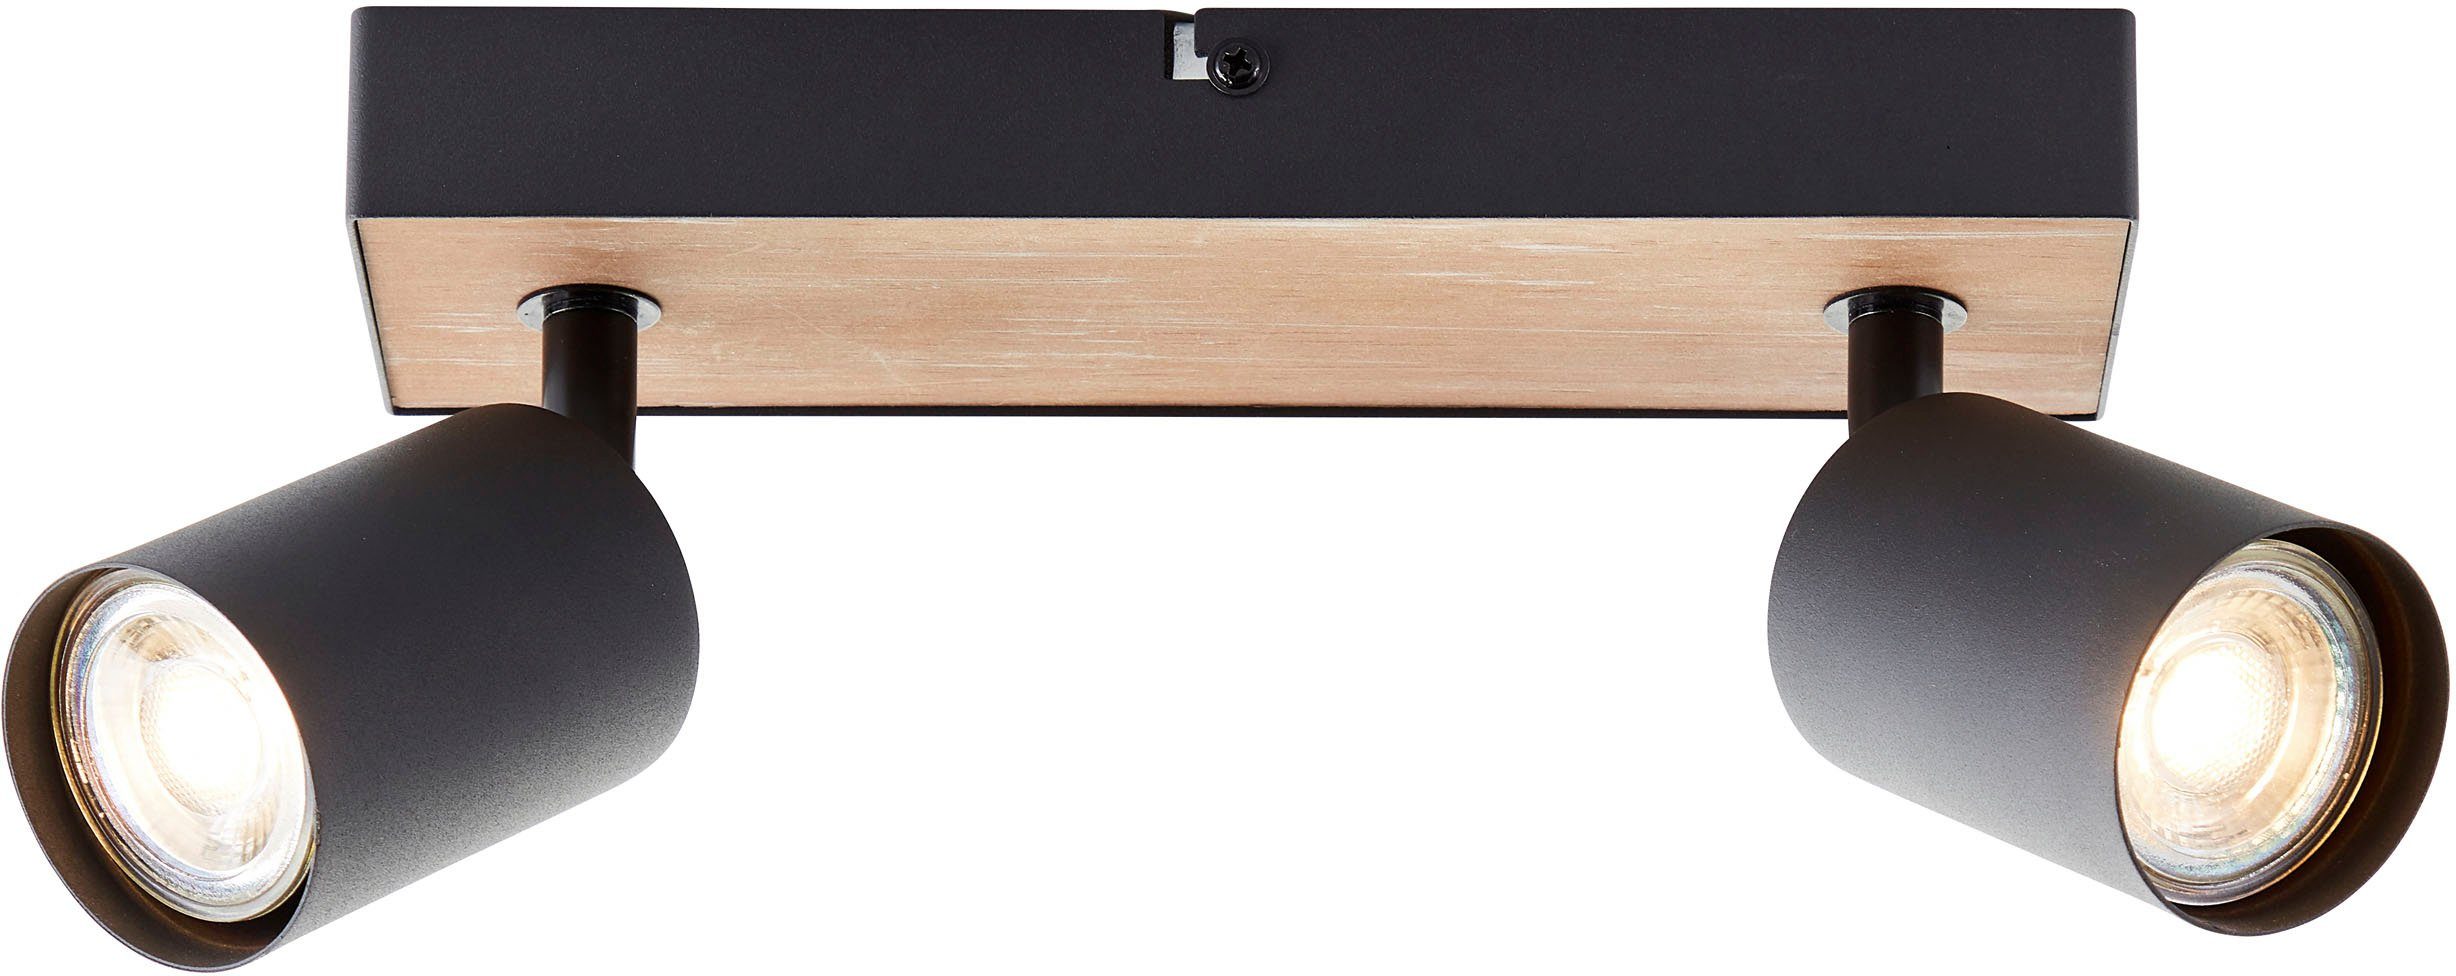 Metall/Holz Deckenstrahler 345lm, Jello 3000K, Brilliant GU10, cm, wechselbar, LED Warmweiß, Wood, 15x24x8 schwenkbar, Spotbalken